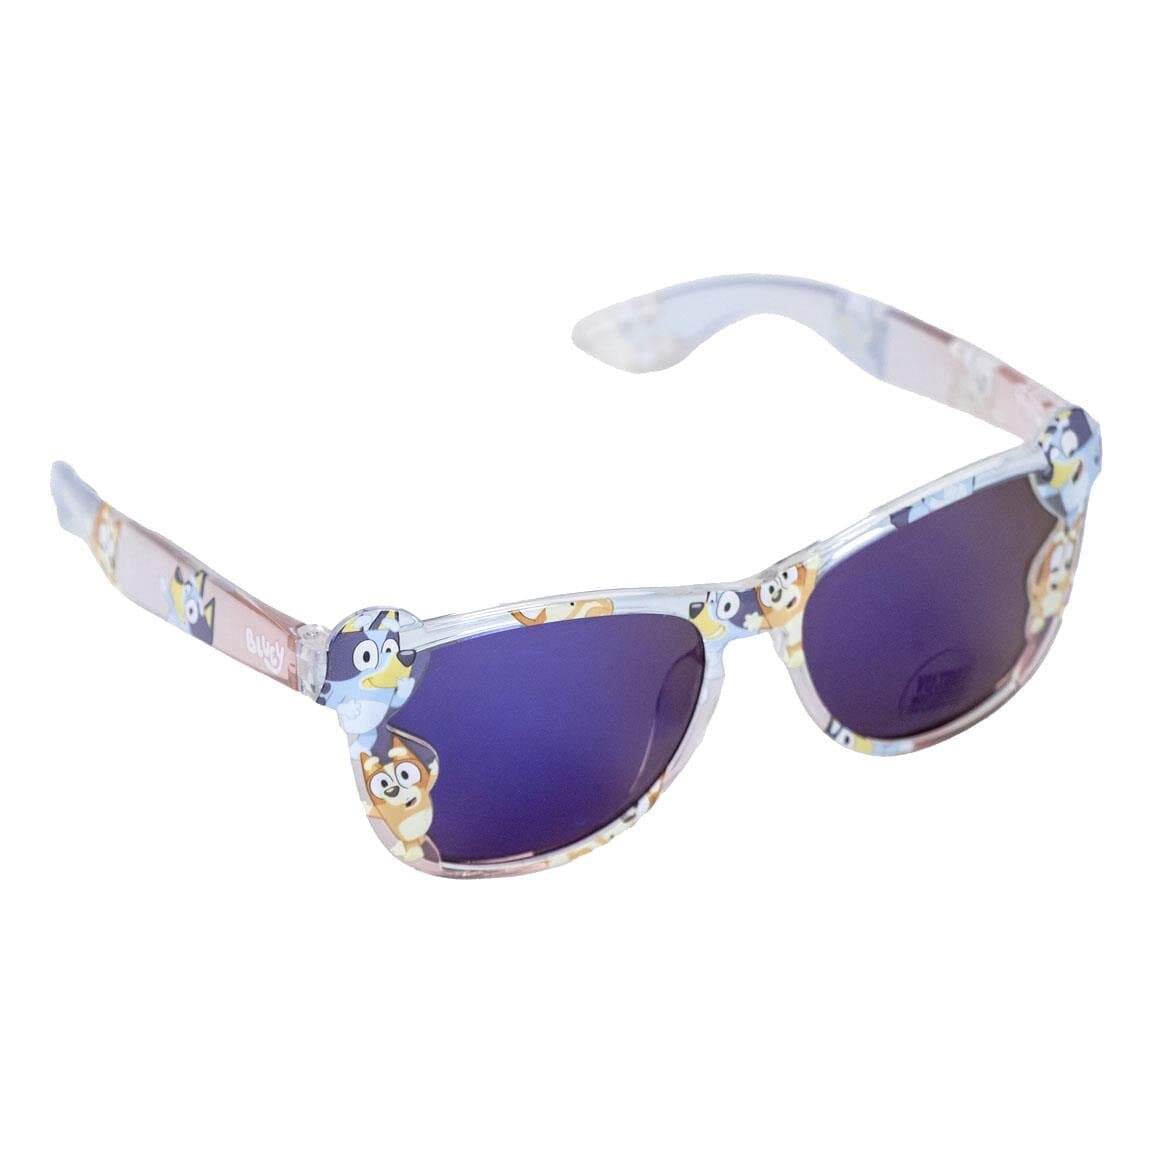 Bluey - Sonnenbrille für Kinder